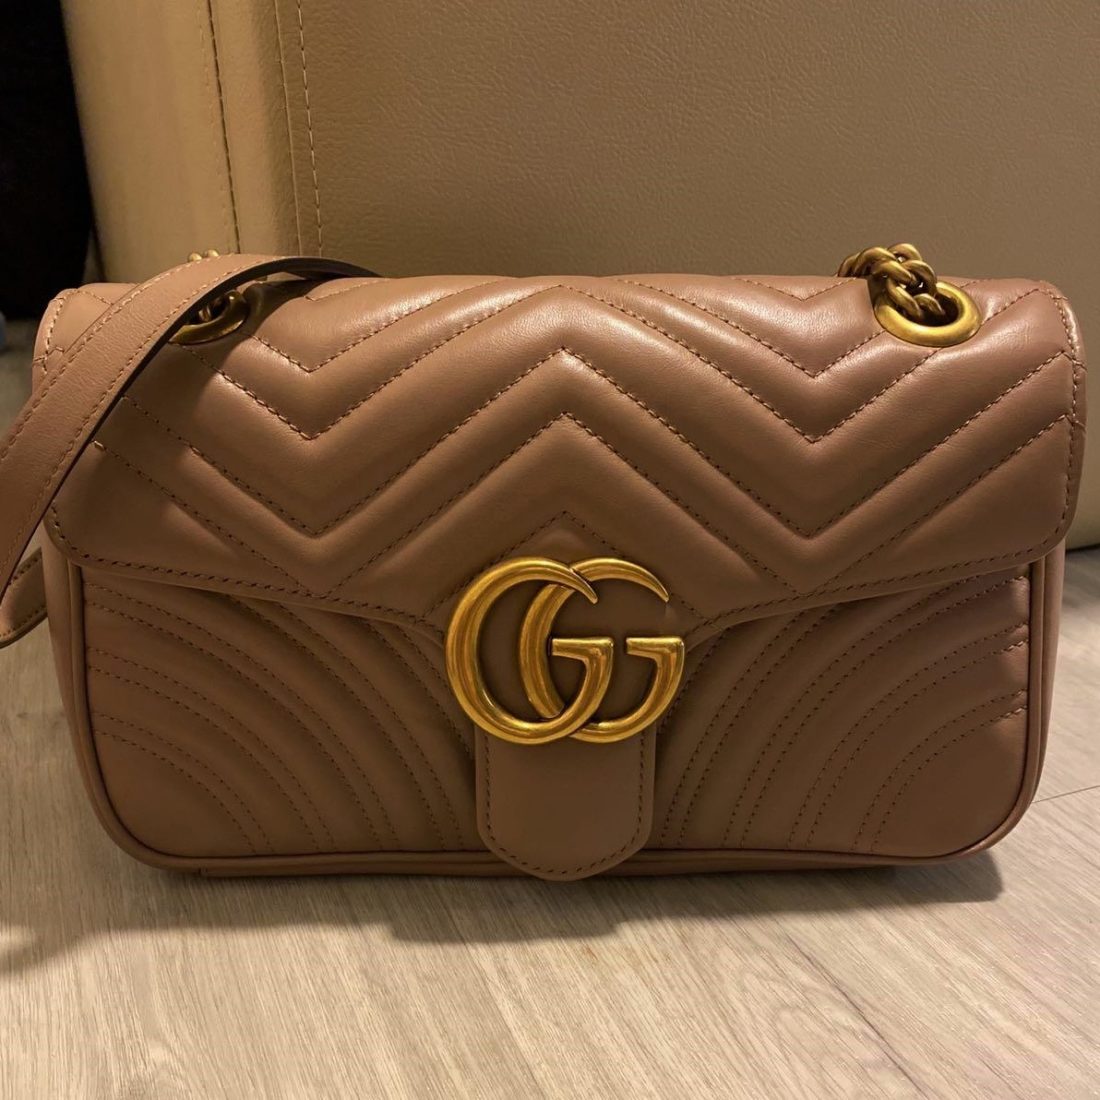 Где продать брендовую сумку Gucci дорого